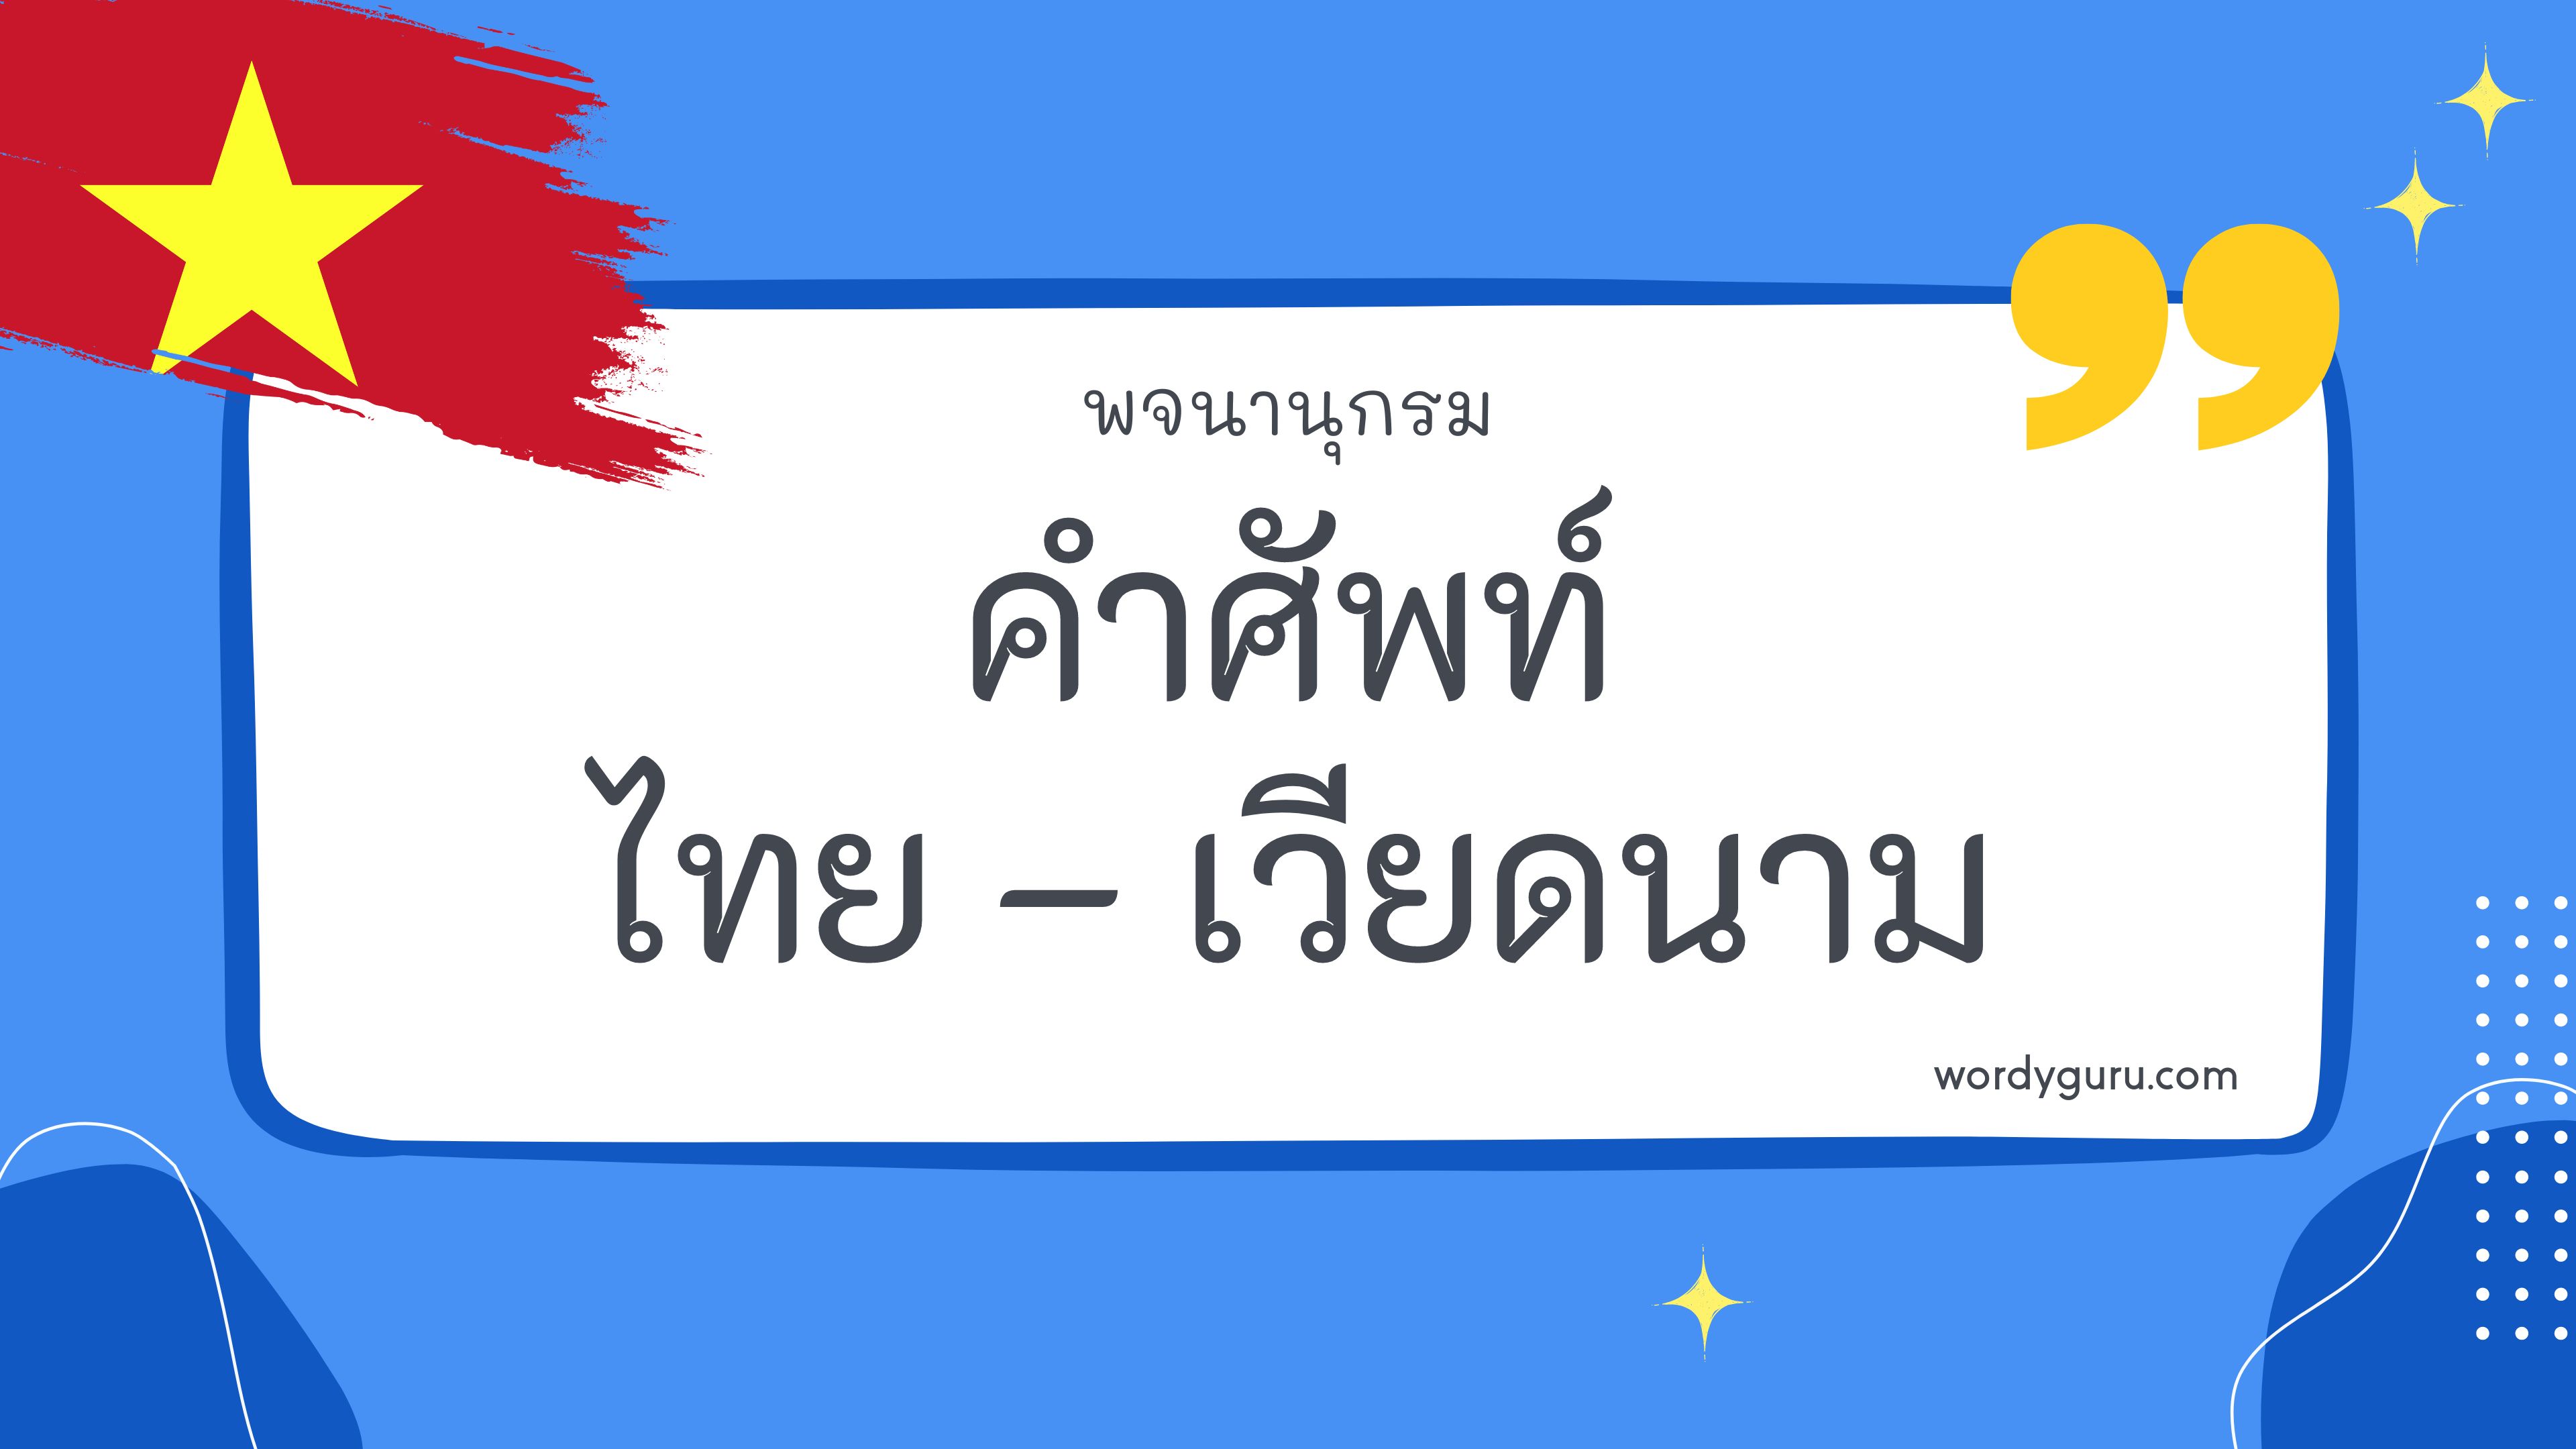 คำศัพท์ภาษาไทย - เวียดนาม 100 คำ ที่นิยมใช้ พบเห็นบ่อย ในชีวิตประจำวัน